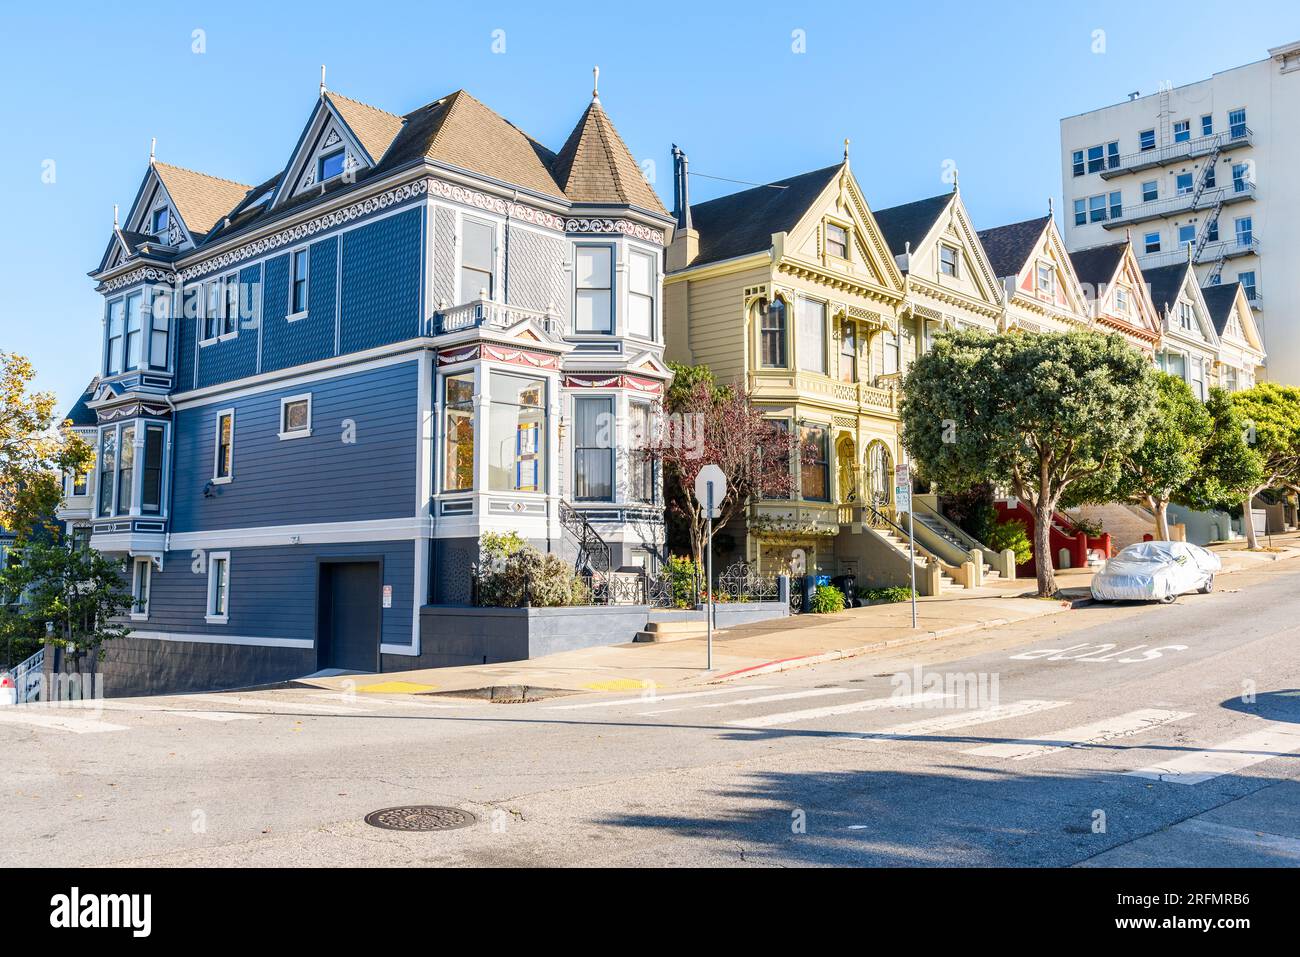 Rangée de vieilles maisons victoriennes le long d'une rue en pente à San Francisco Banque D'Images